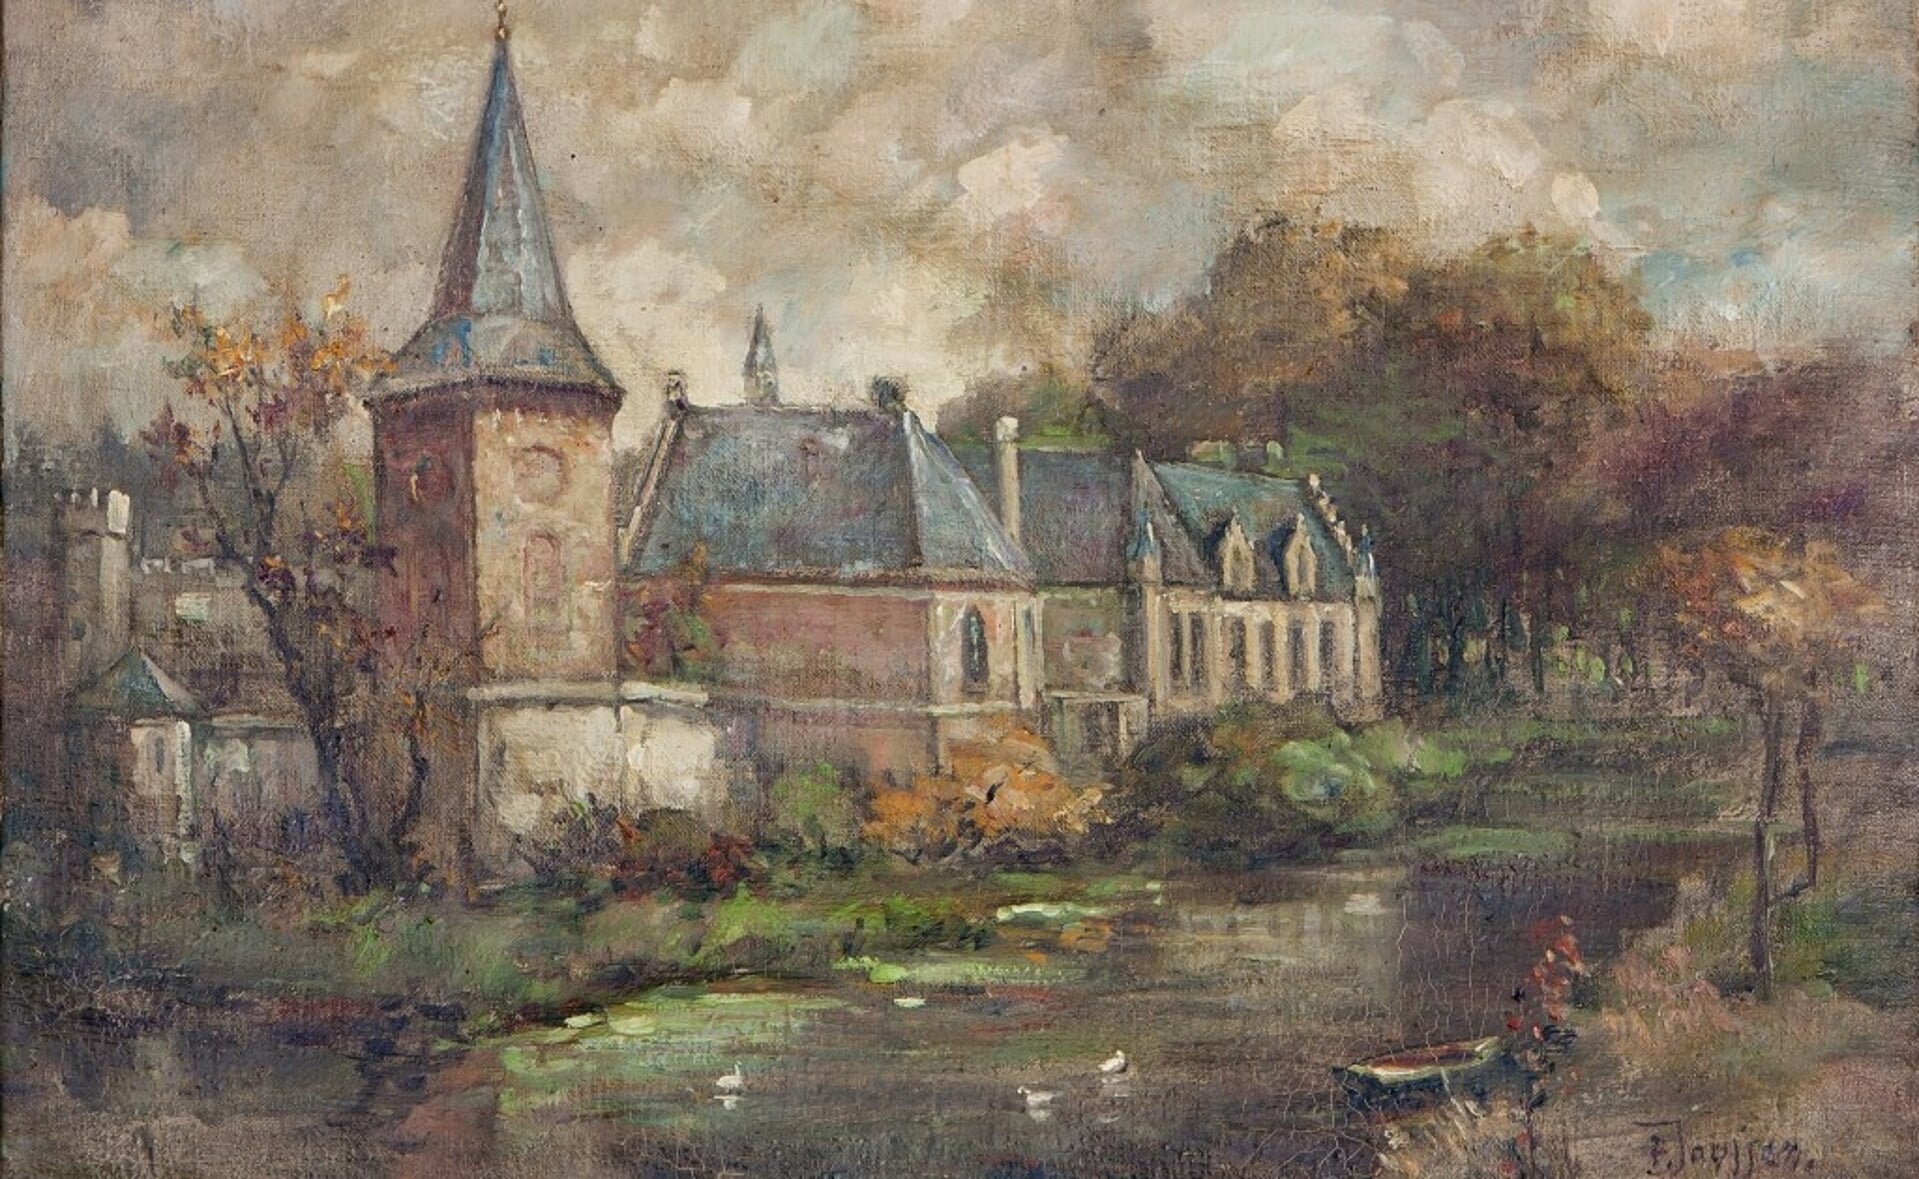 Het kasteel inspireerde ook de Boxtelse kunstschilder Pierre Janssen.